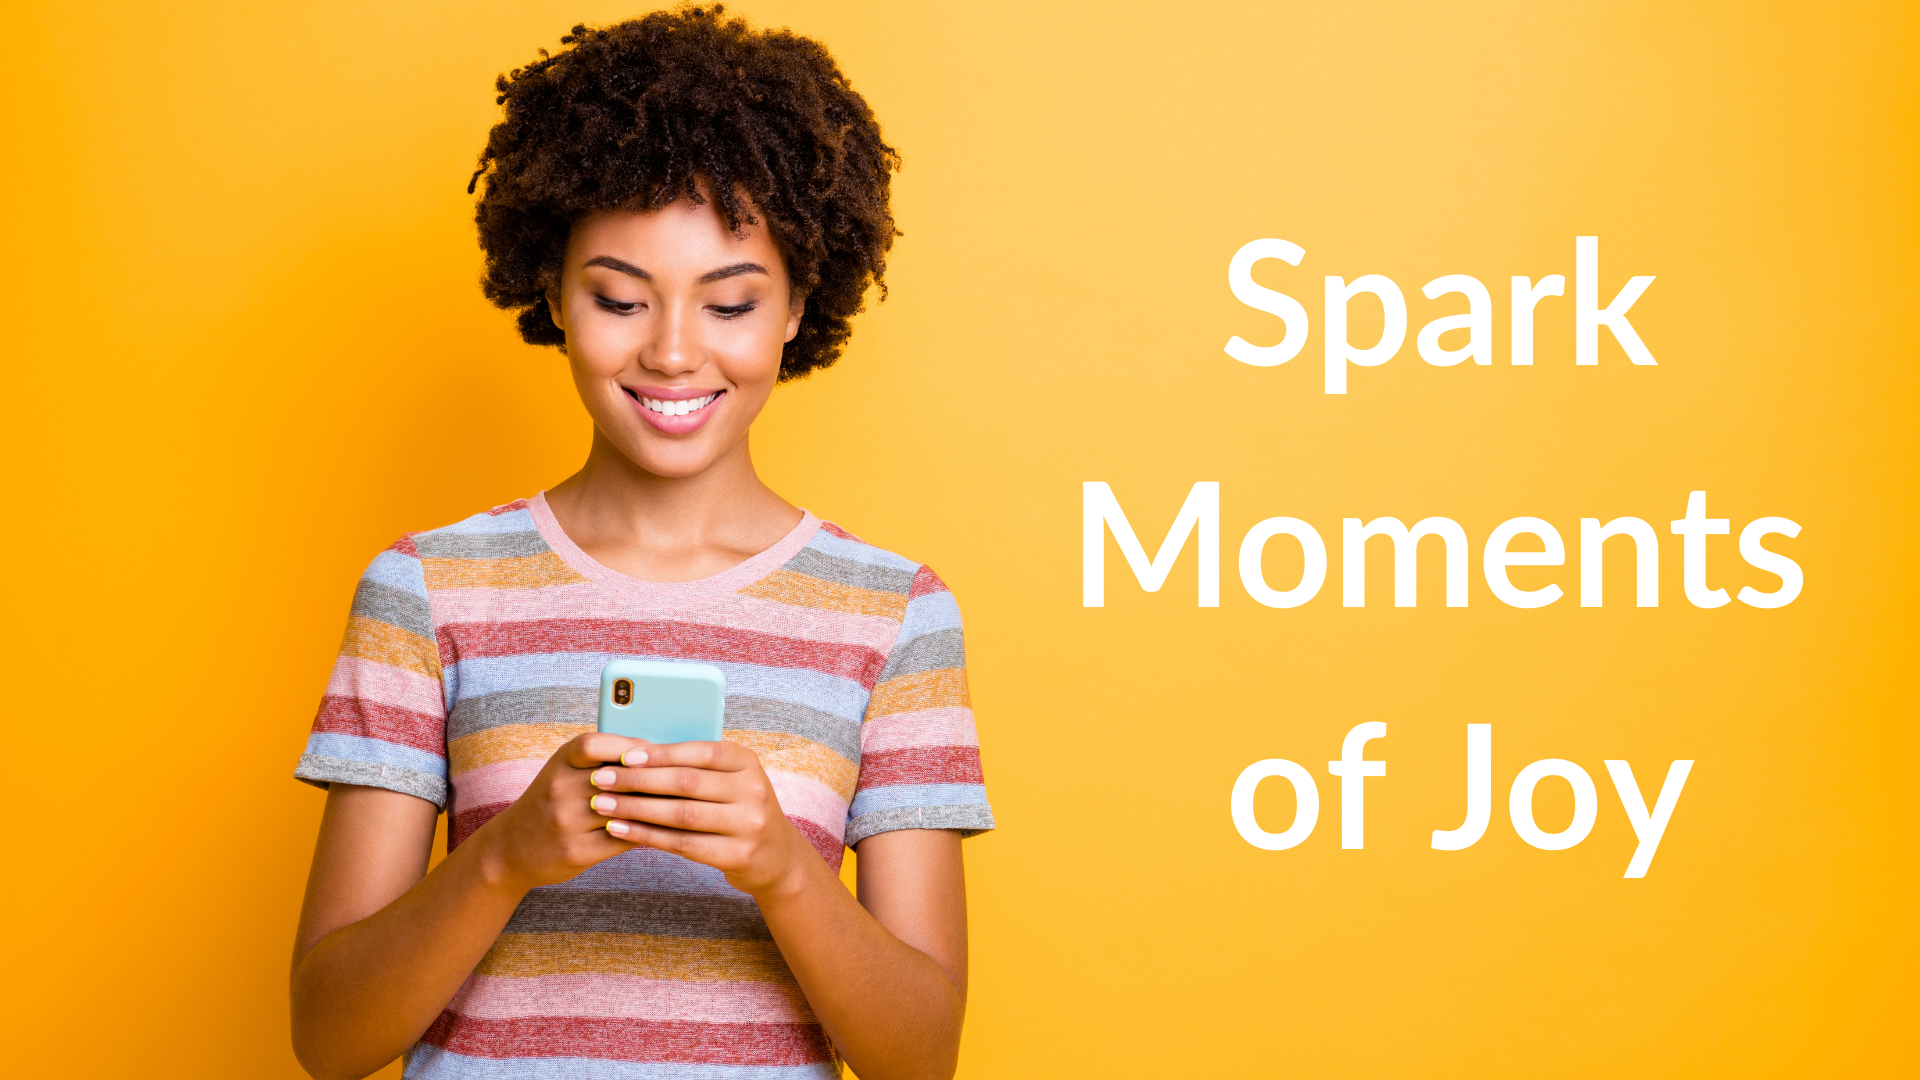 Spark moments of joy (Source: Pinterest)